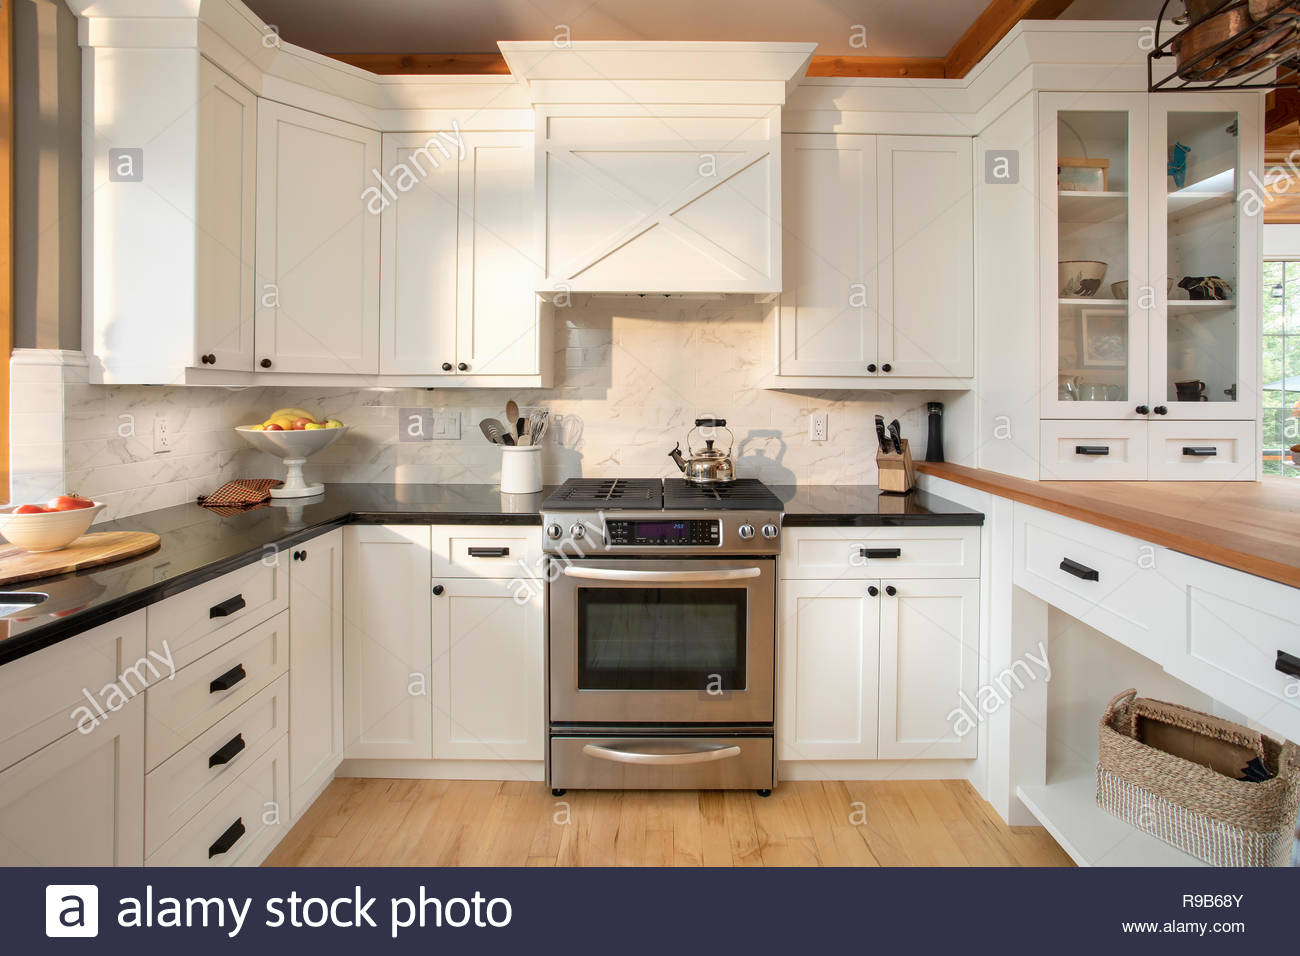 White home showcase interior kitchen Stock Photo